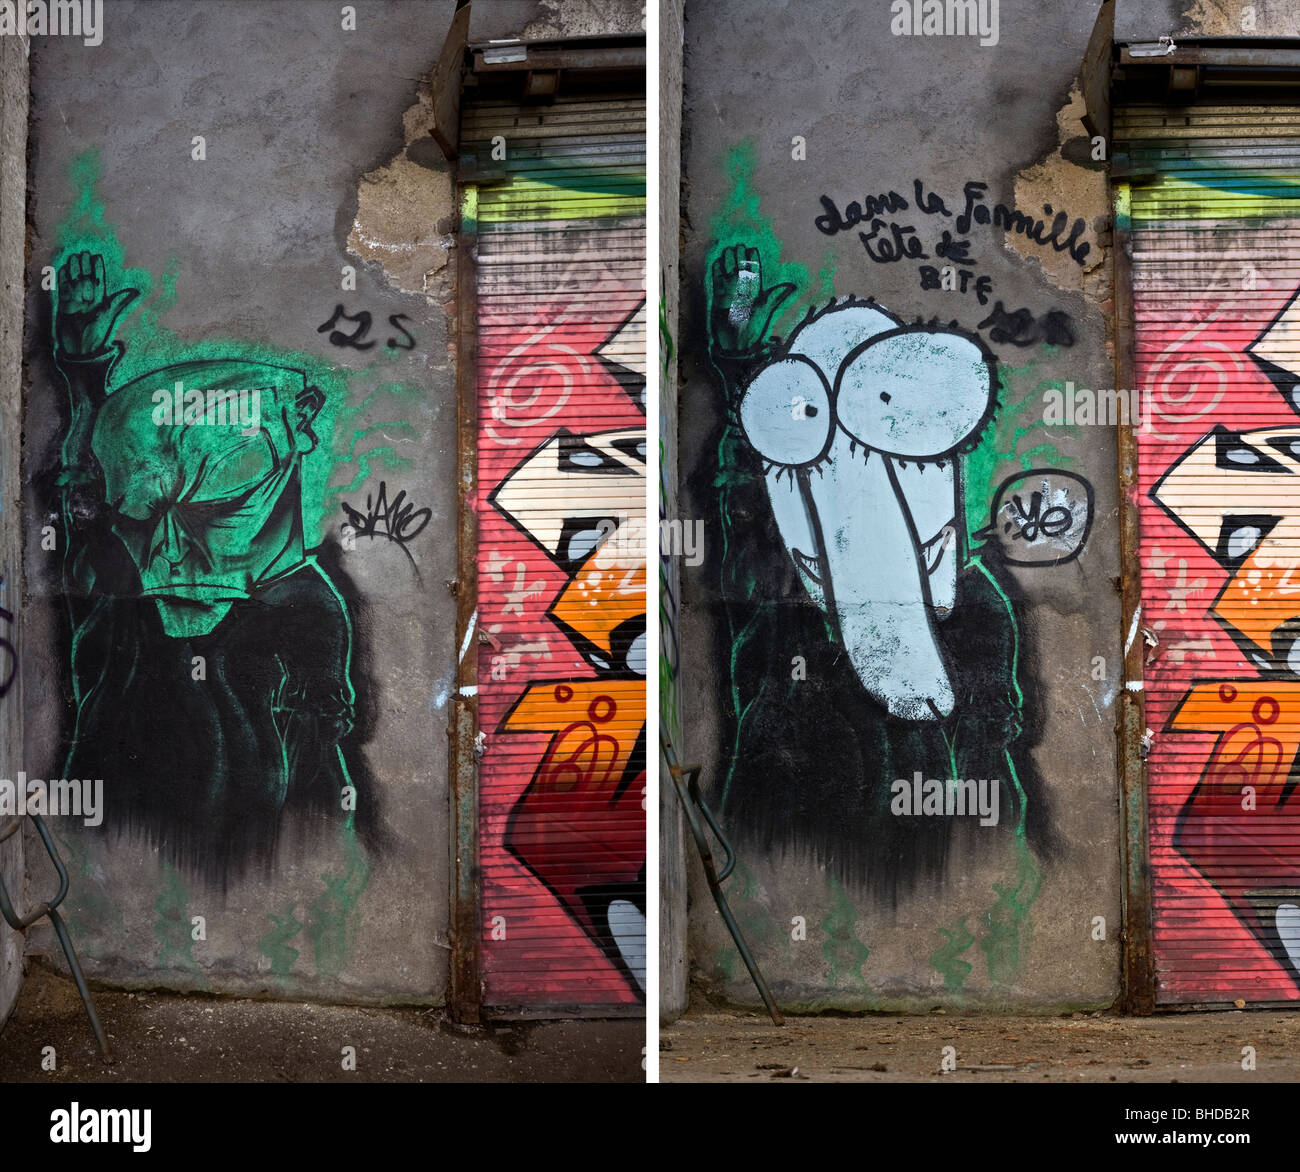 Auf lange Sicht, Entwicklung eines Stückes von Graffiti an der Wand (Vichy - Frankreich). Vichy, Évolution Dans le temps d ' un Graffiti. Stockfoto